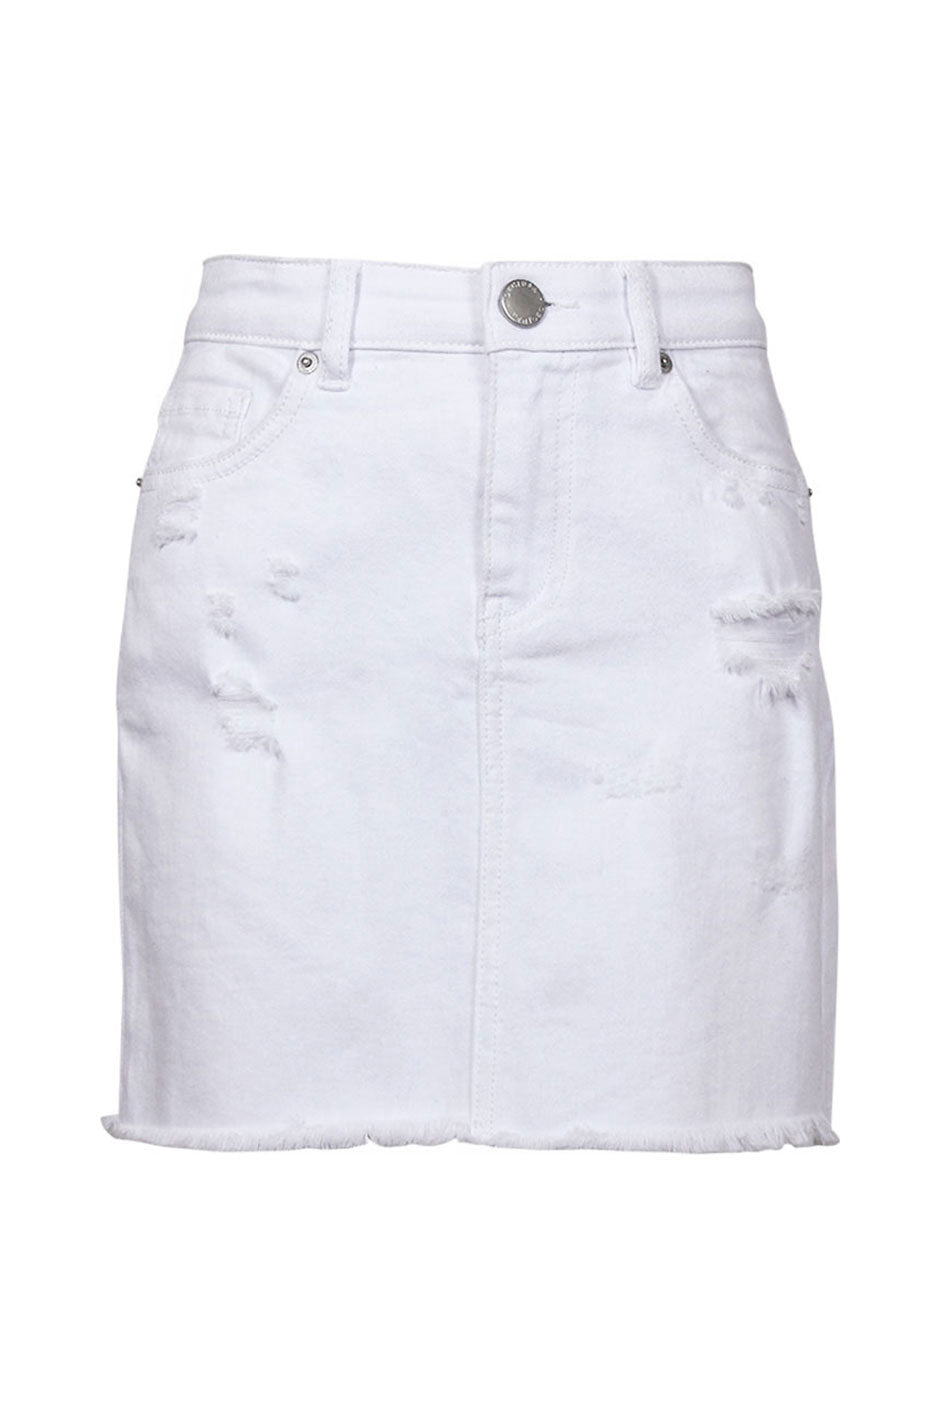 kids white jean skirt